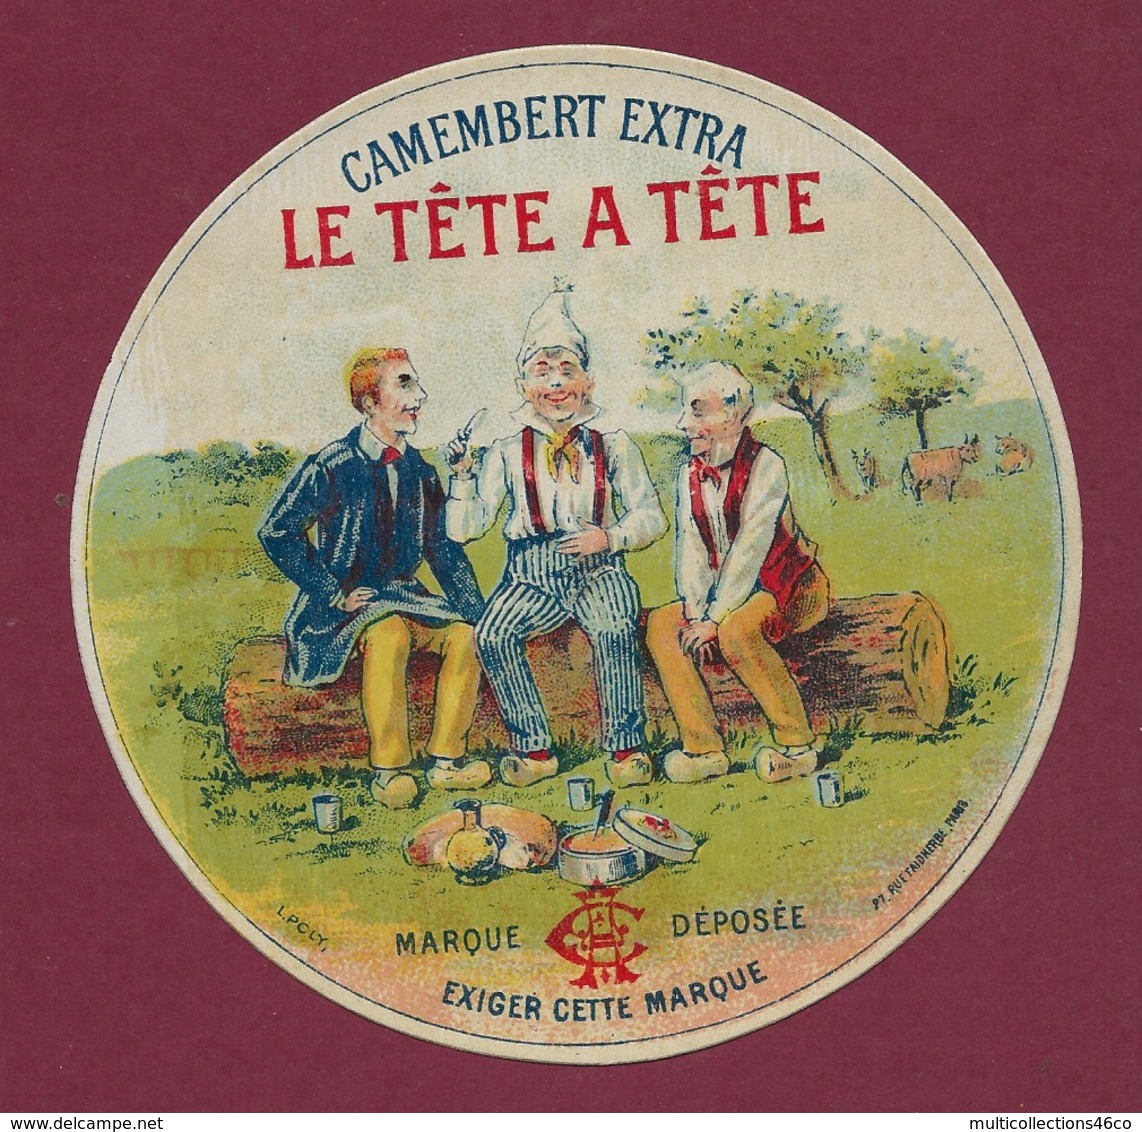 160120A - ETIQUETTE DE FROMAGE - CAMEMBERT EXTRA Le Tête à Tête - Pique Nique Sabot Vache Scène Champêtre - Fromage